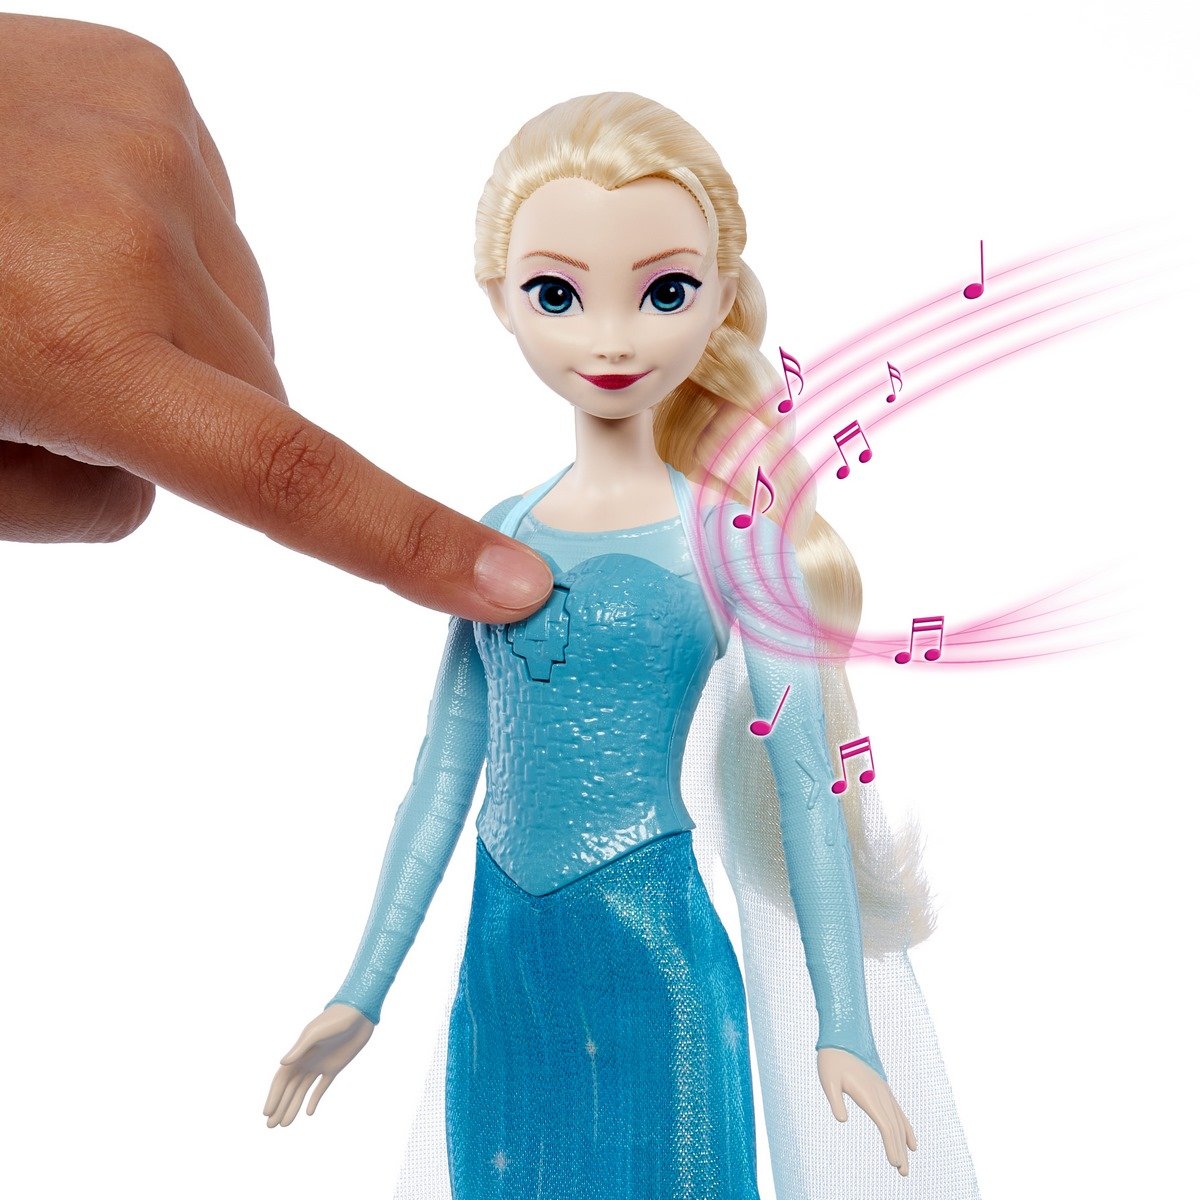 Poupée Elsa la Reine des Neiges (Elsa chantant Libérée délivrée